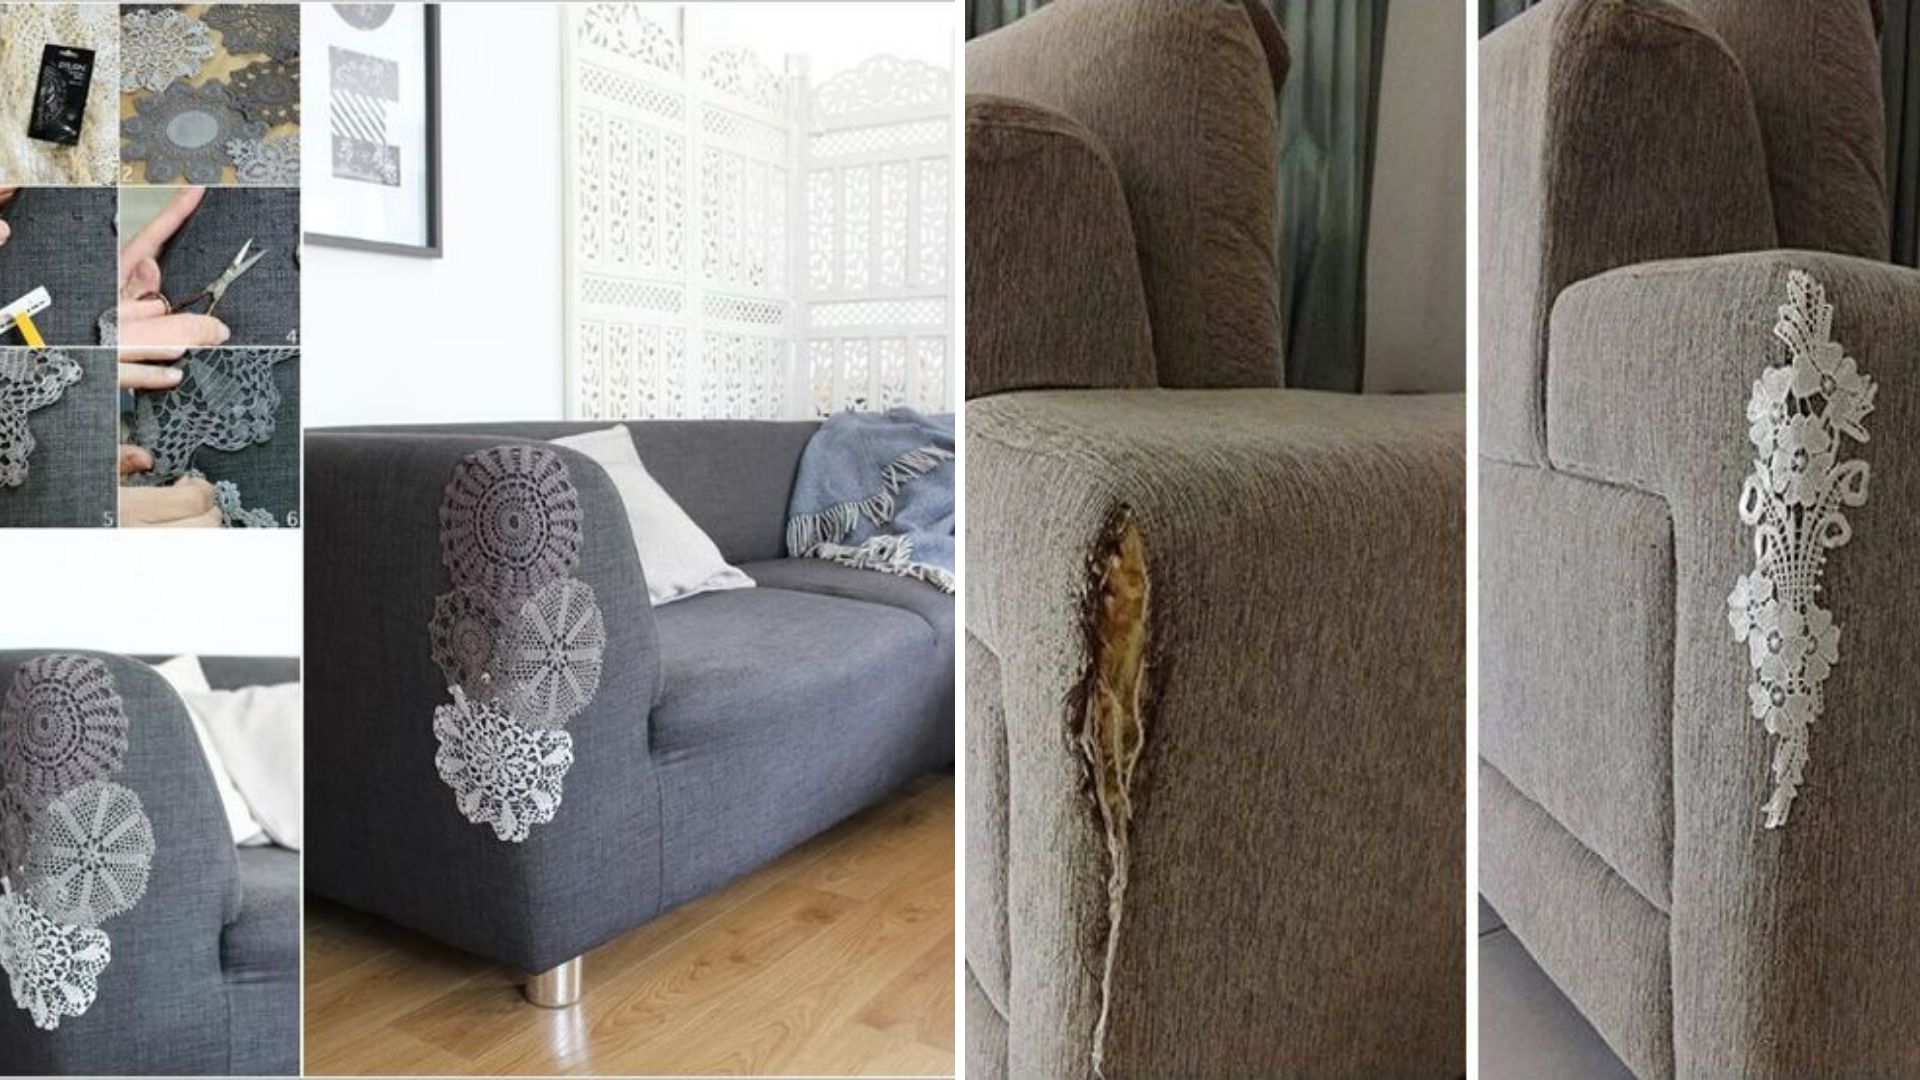 Как можно переделать диван своими руками? | онлайн-журнал о ремонте и дизайне